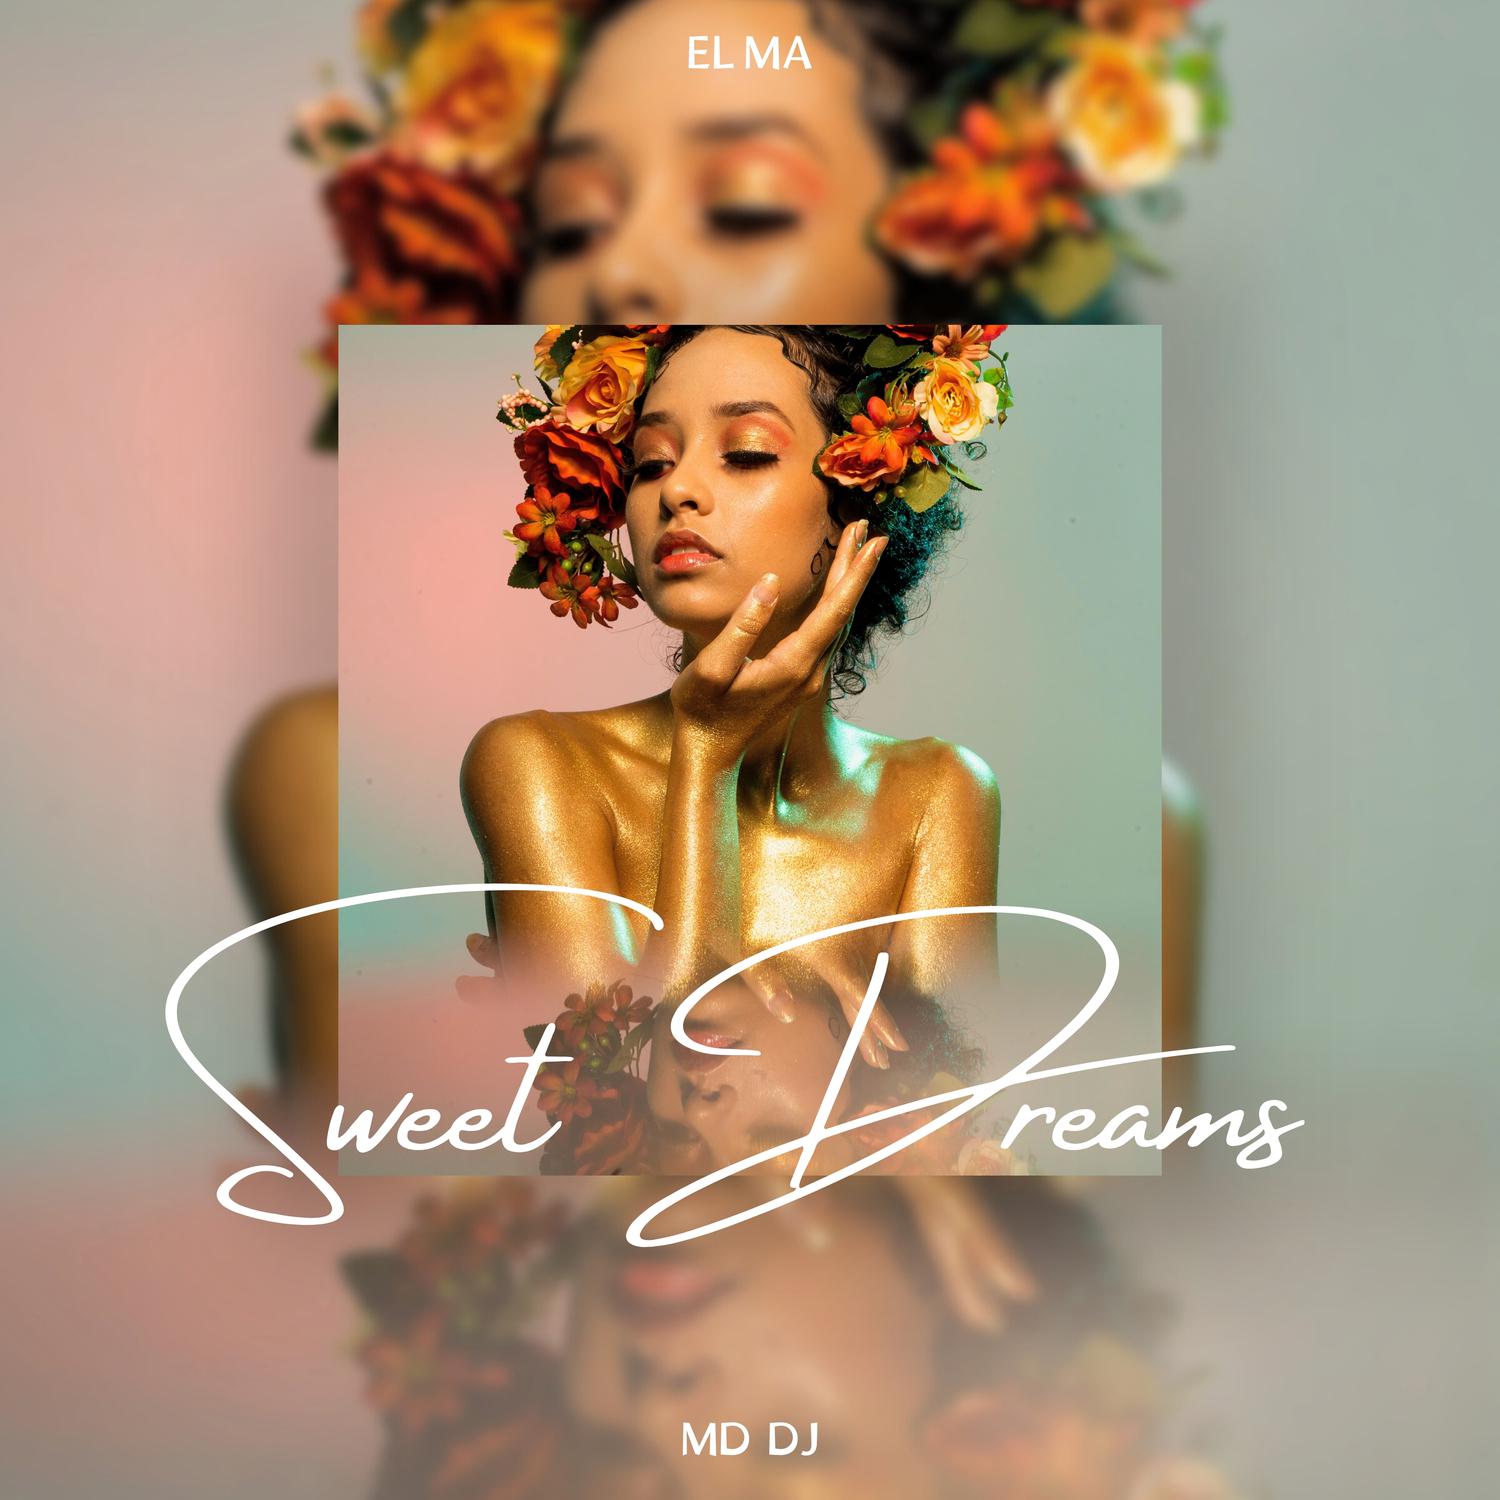 MD DJ - Sweet Dreams